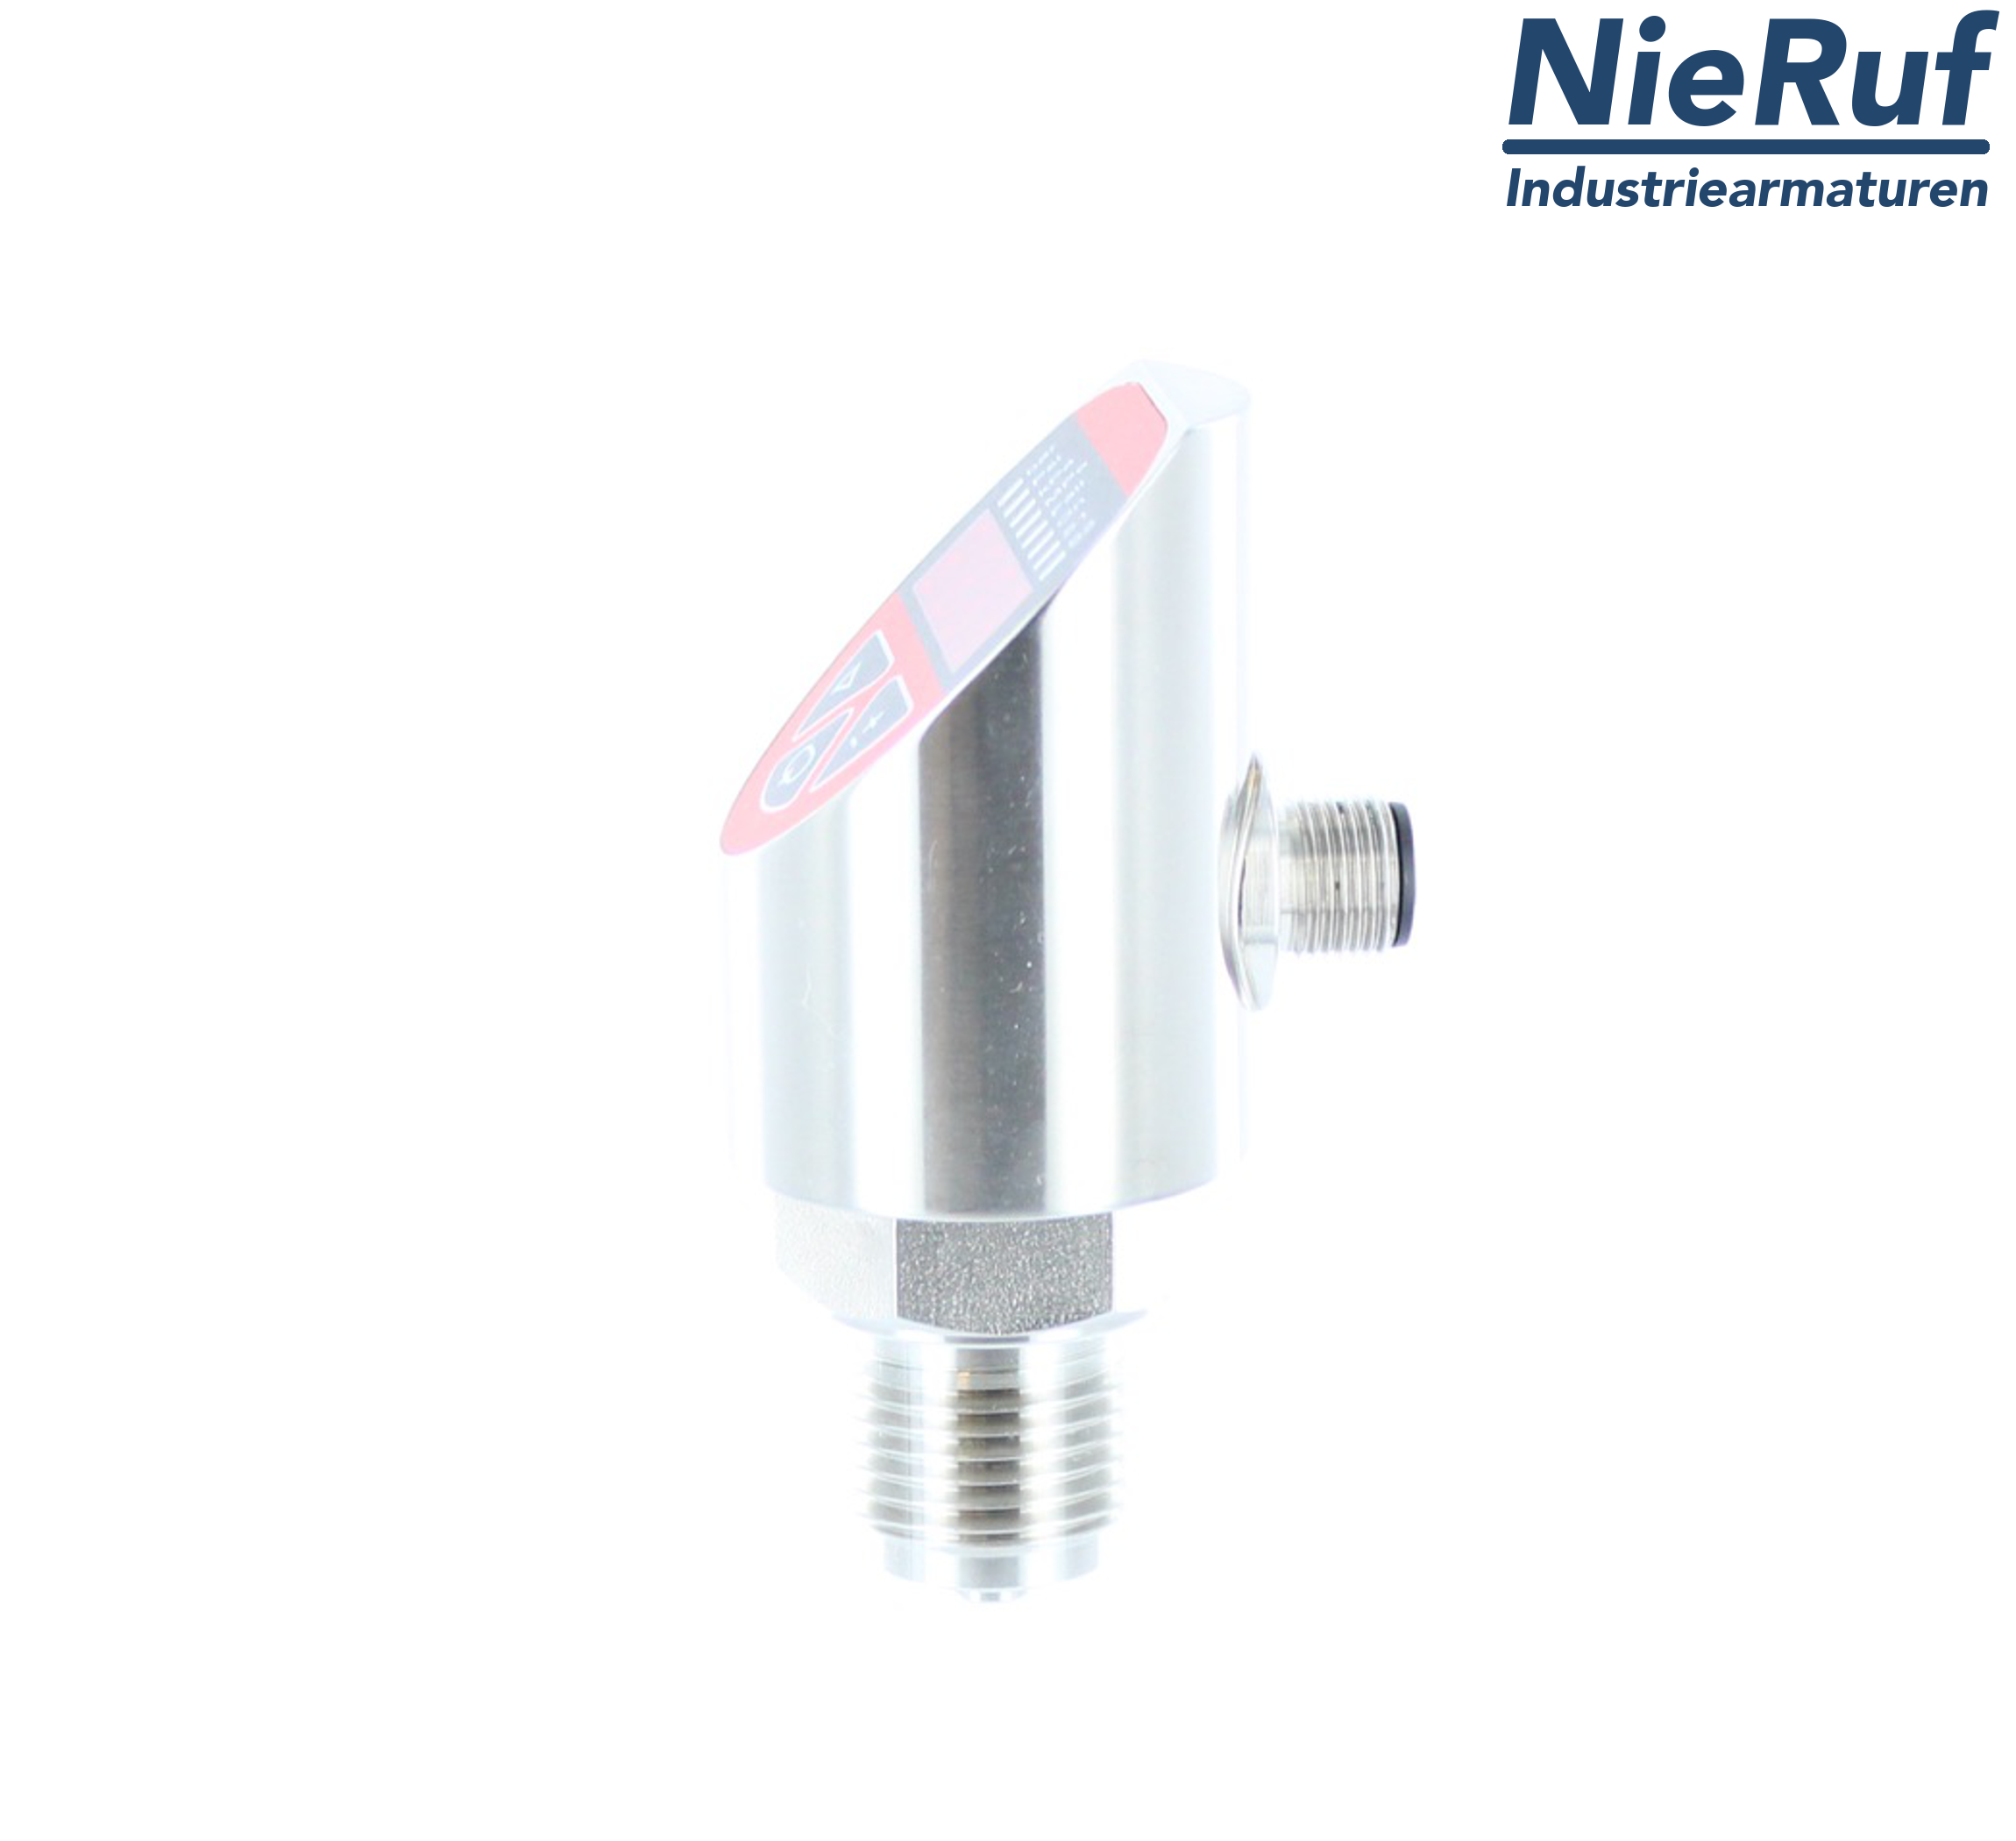 digital pressure sensor G 1/2" B 4-wire: 1xPNP, 1x4 - 20mA, Desina FPM 0,0 - 60,0 bar